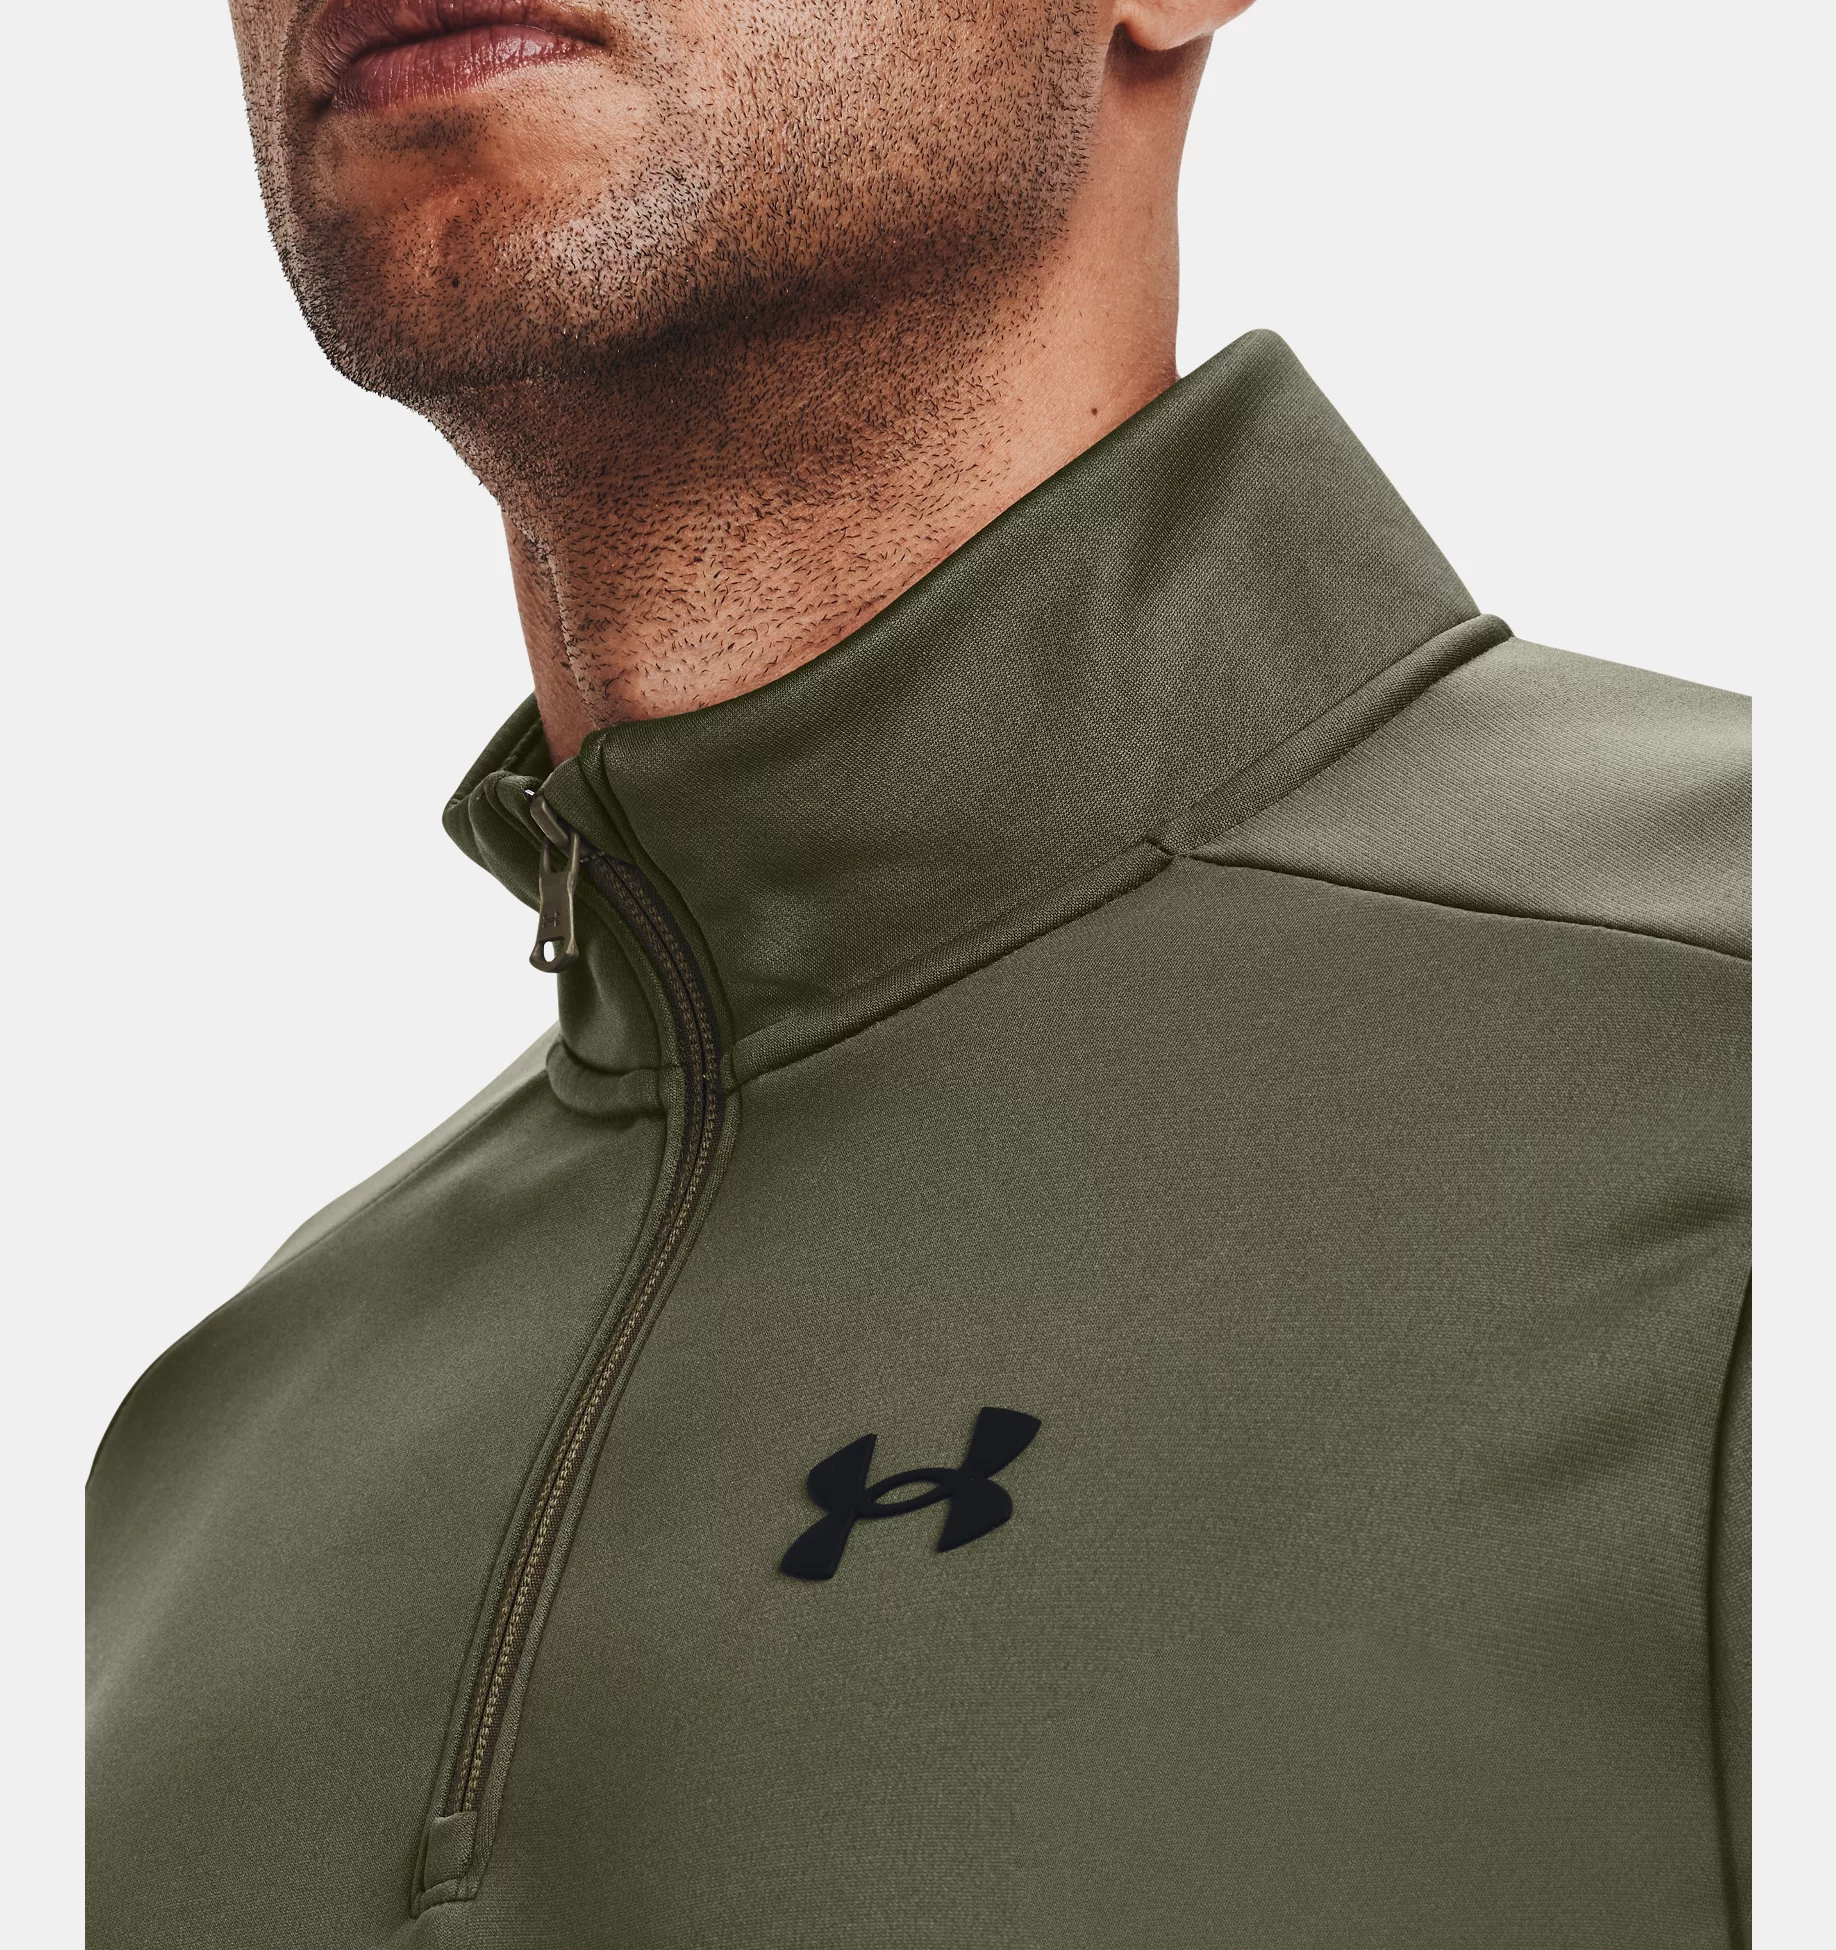 Under Armour Fleece® ¼ Zip Marine OD Green / Black (Men's)